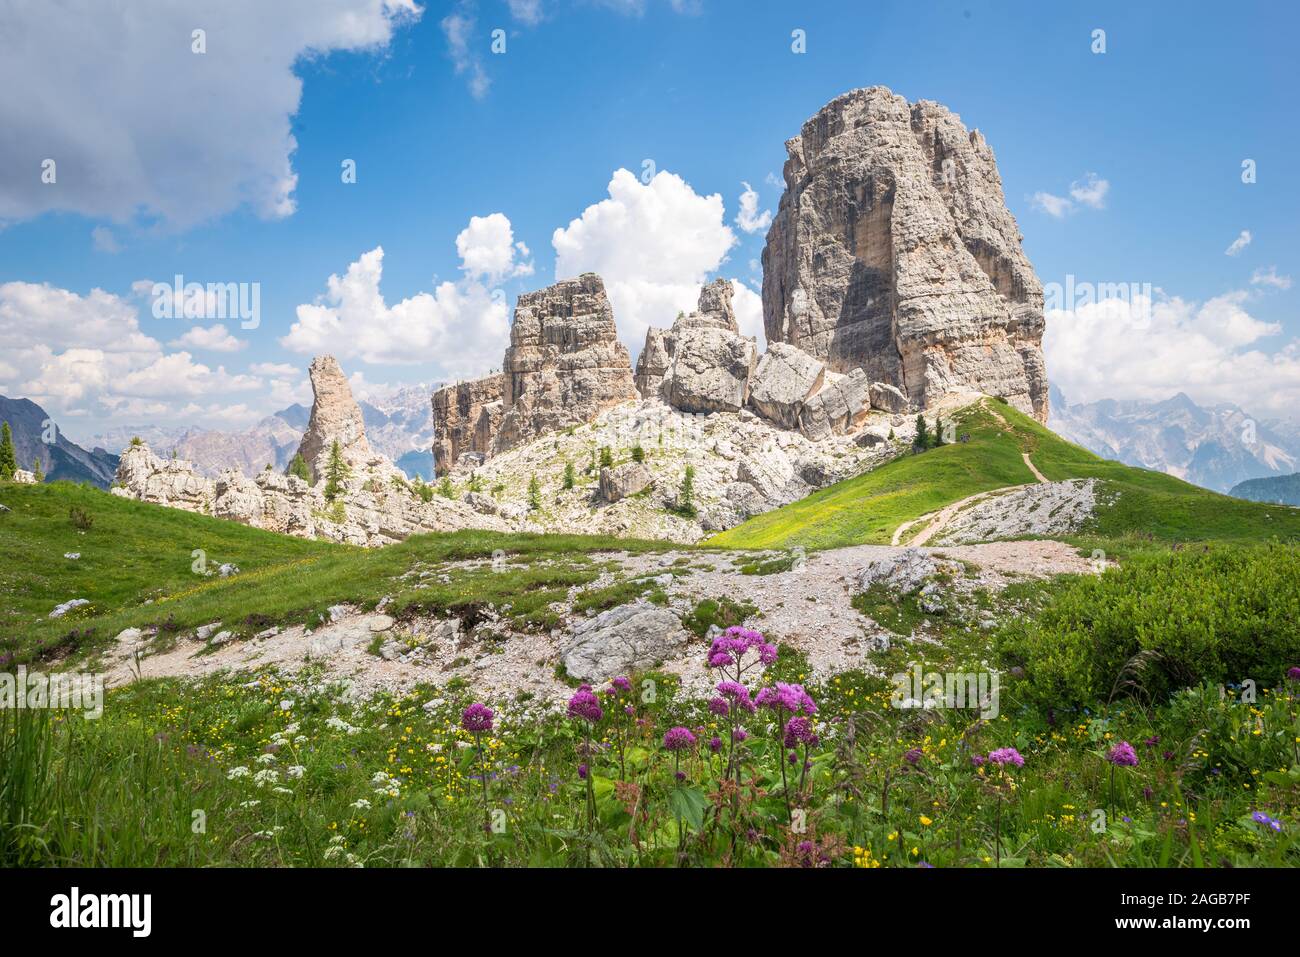 La formazione di montagna " Cinque Torri' nell'Ampezzo Dolomiti, Italia. Luogo famoso per il suo paesaggio e la prima guerra mondiale. Foto Stock